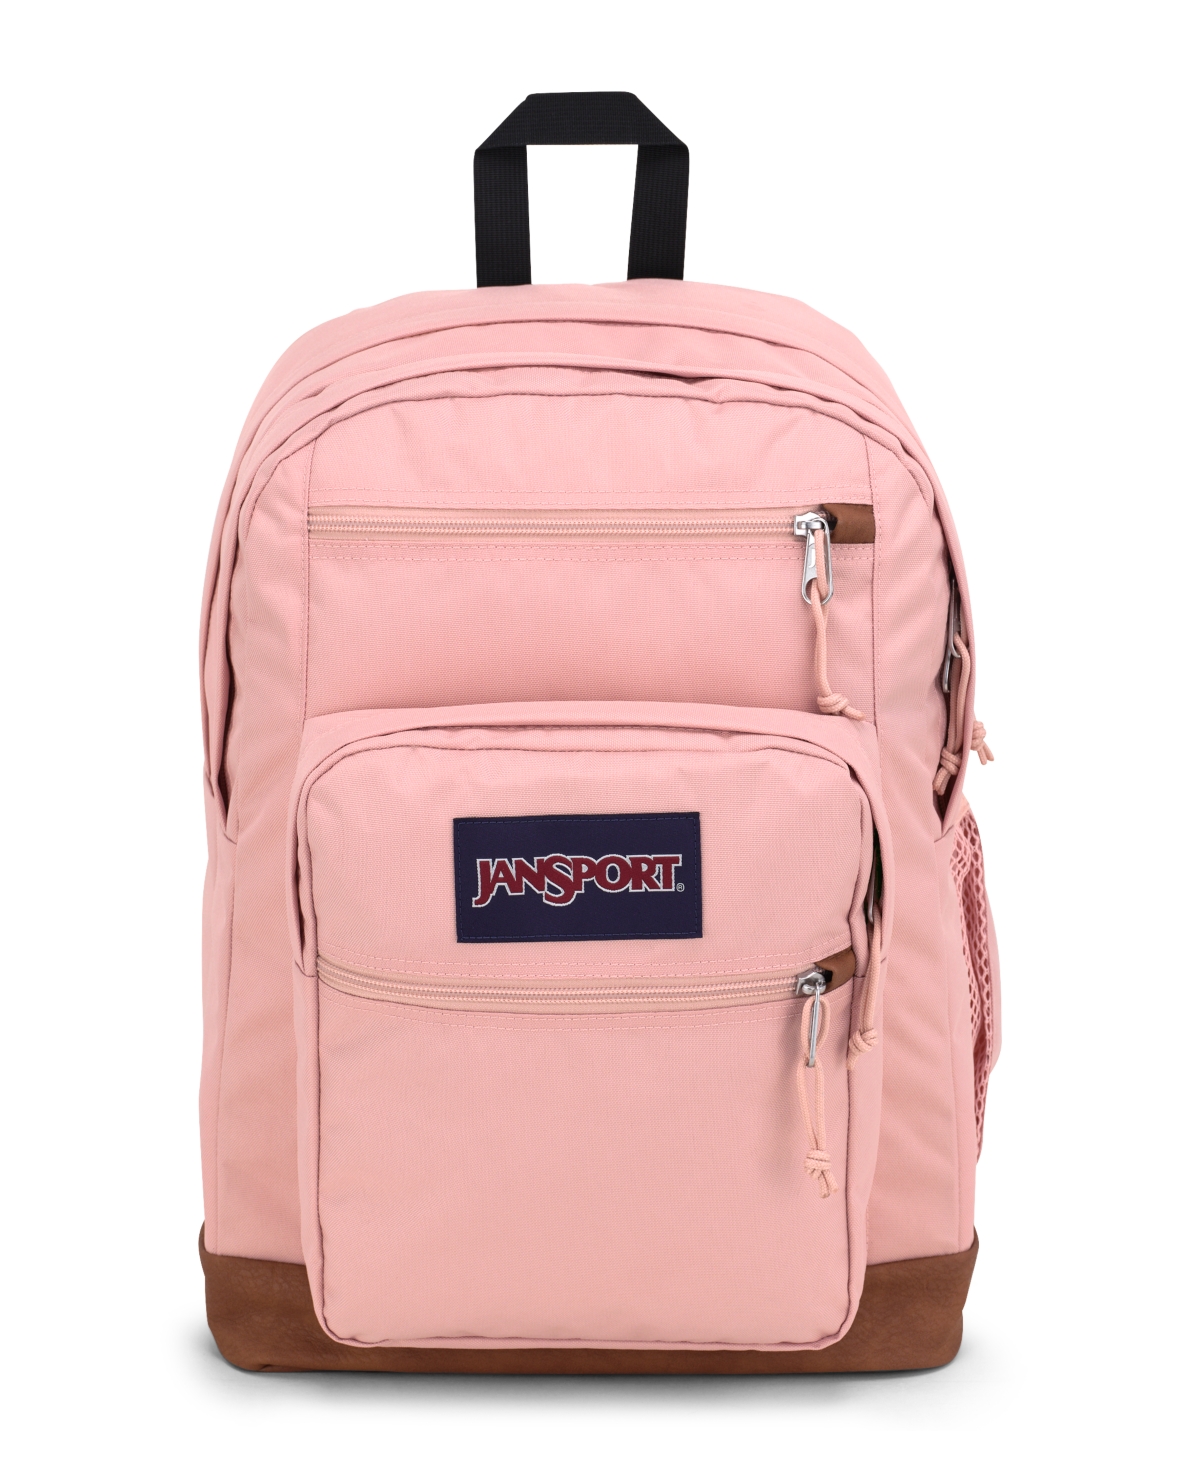 Jansport Cool Student Backpack In Misty Rose